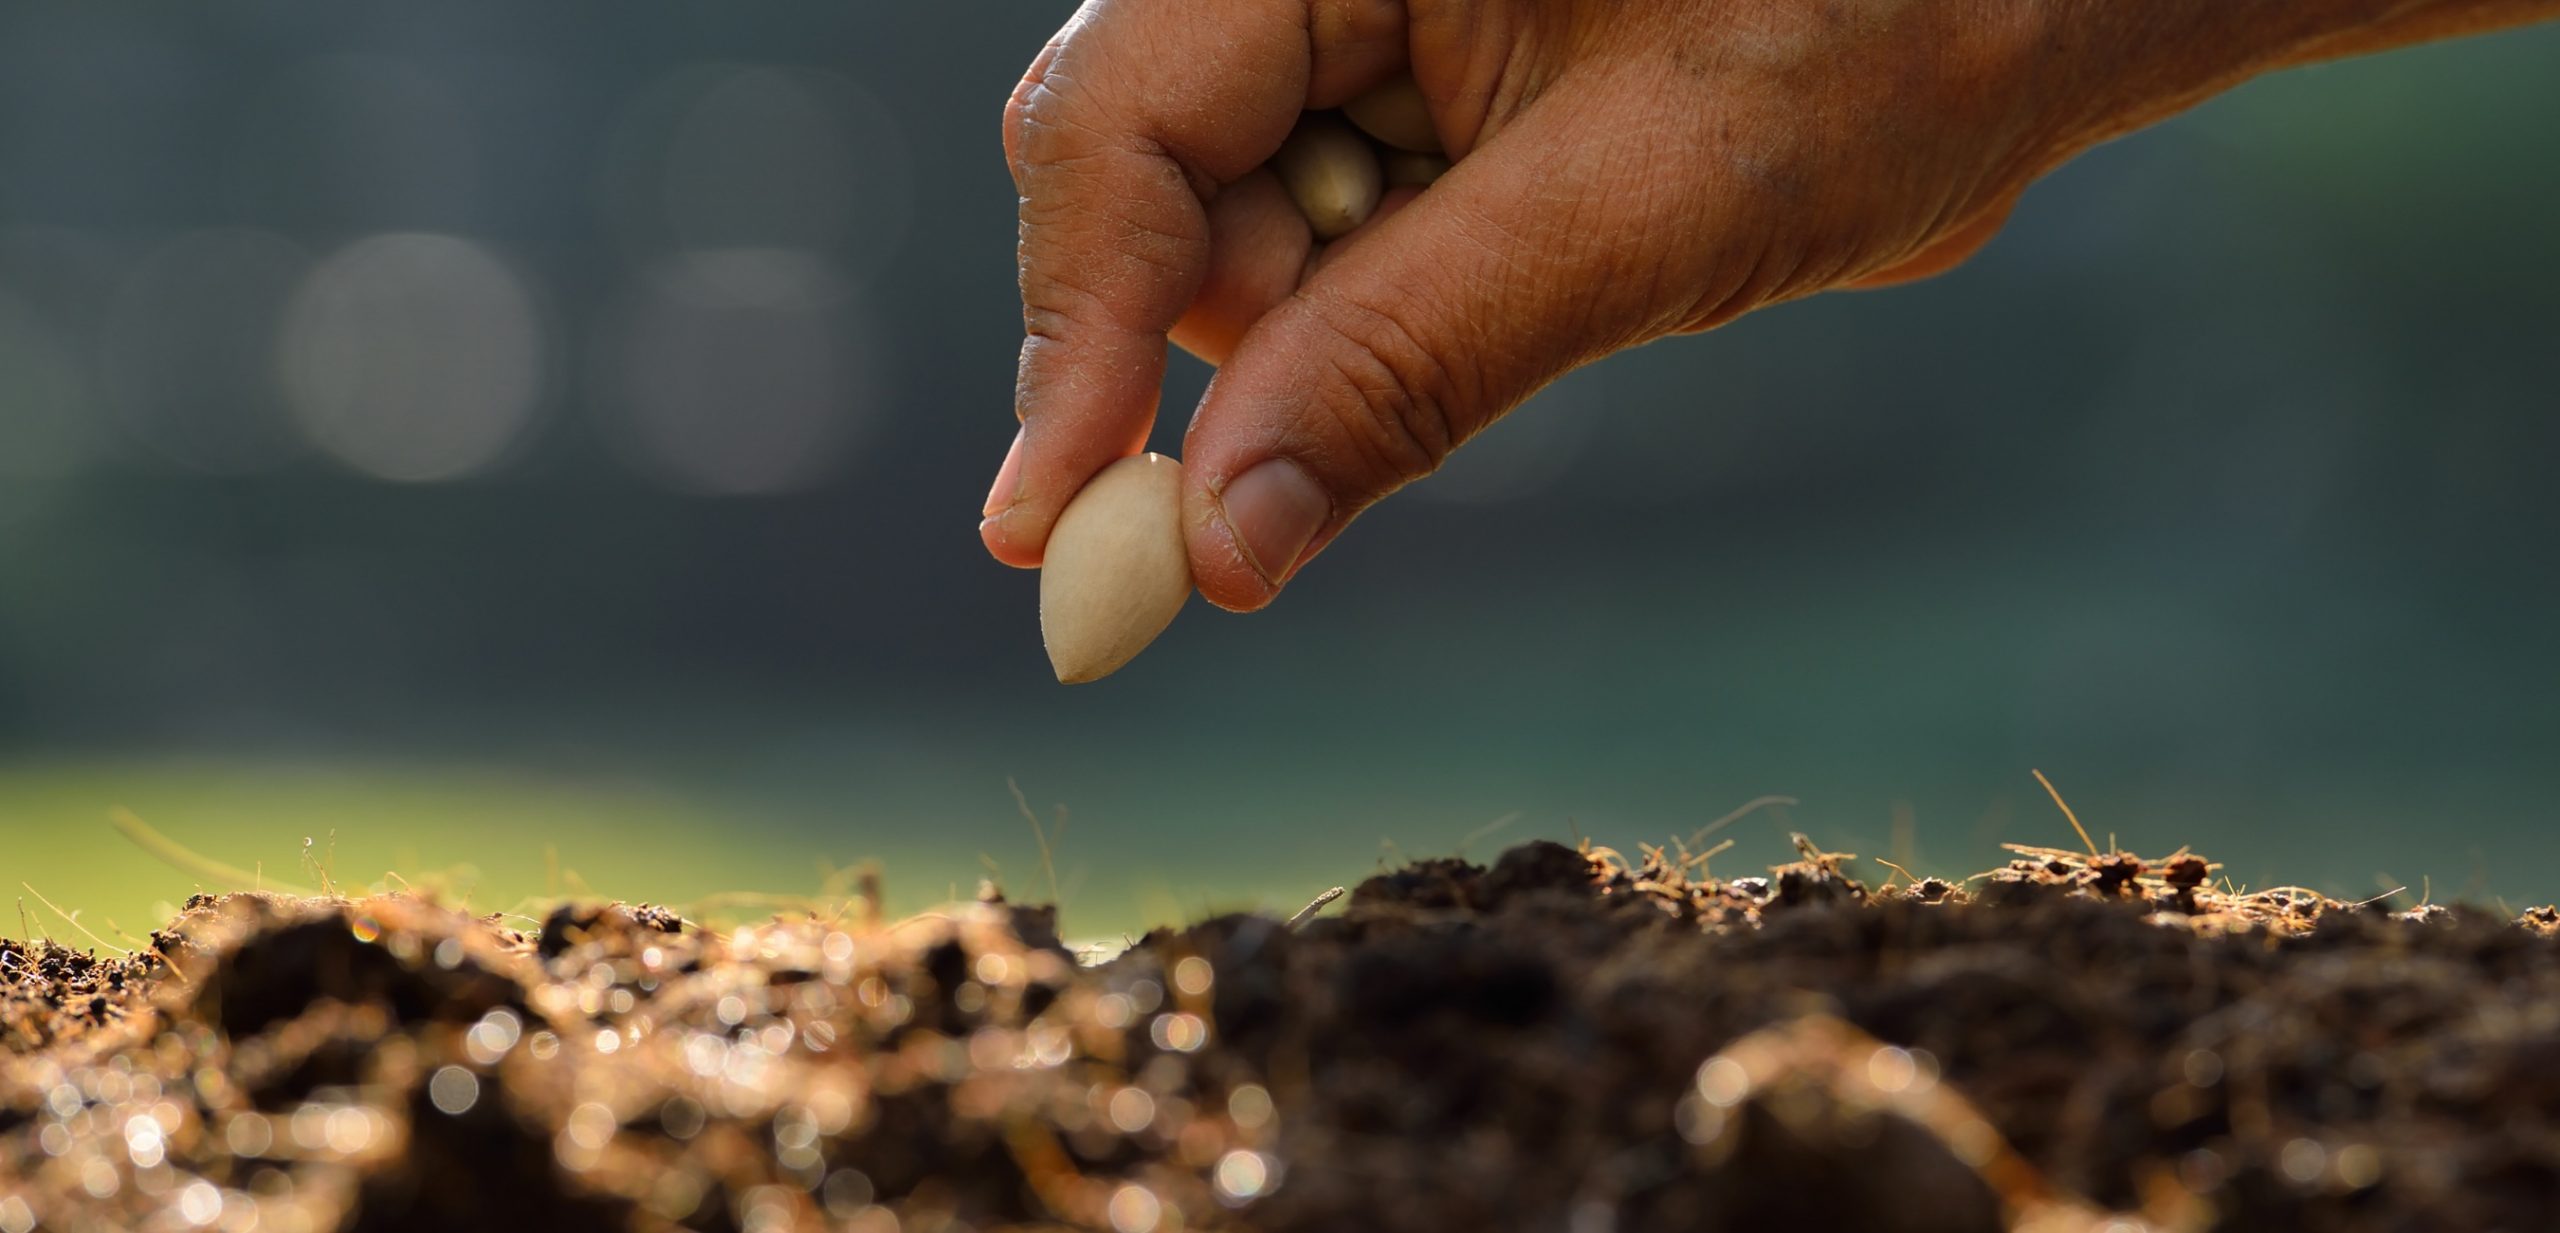 Imagen de portada de sección "Nuestra historia" en donde se visualiza la mano de una persona plantando una semilla en la tierra